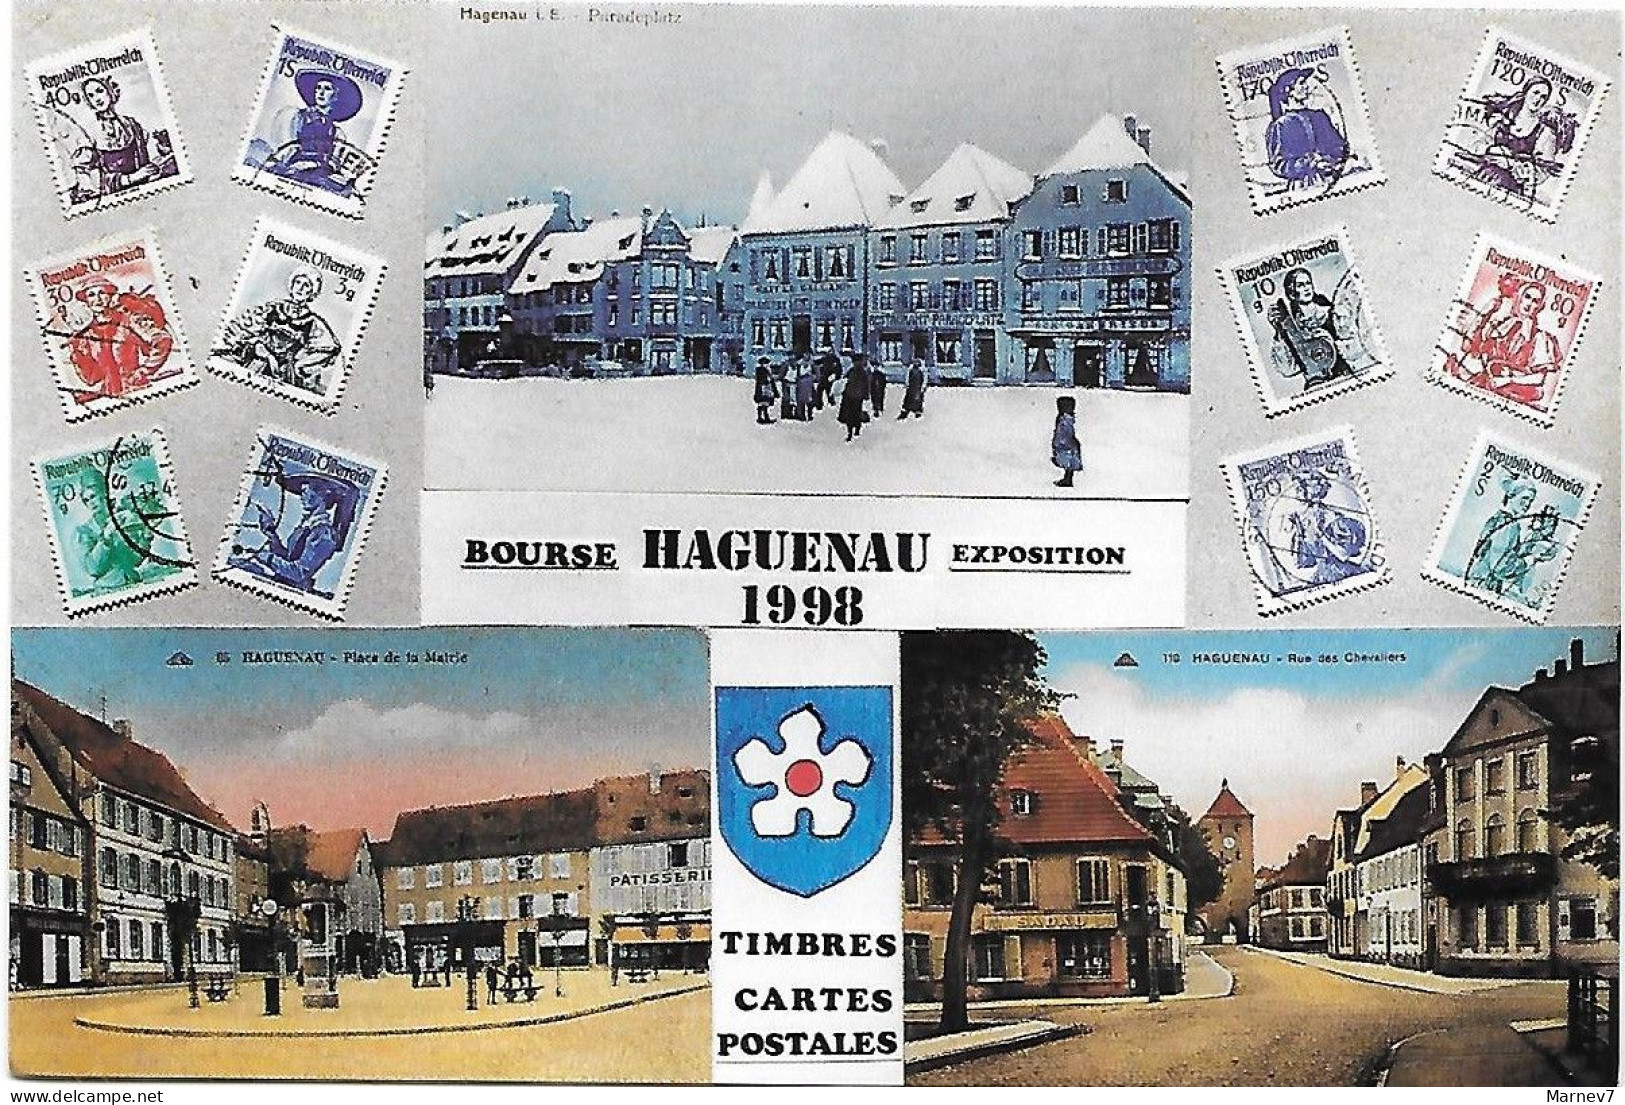 Exposition - Bourse Timbres Cartes - HAGUENAU - Bas Rhin -1993 1994 1996 1997 1998- Vues De La Ville - 5 Cartes - Manifestations